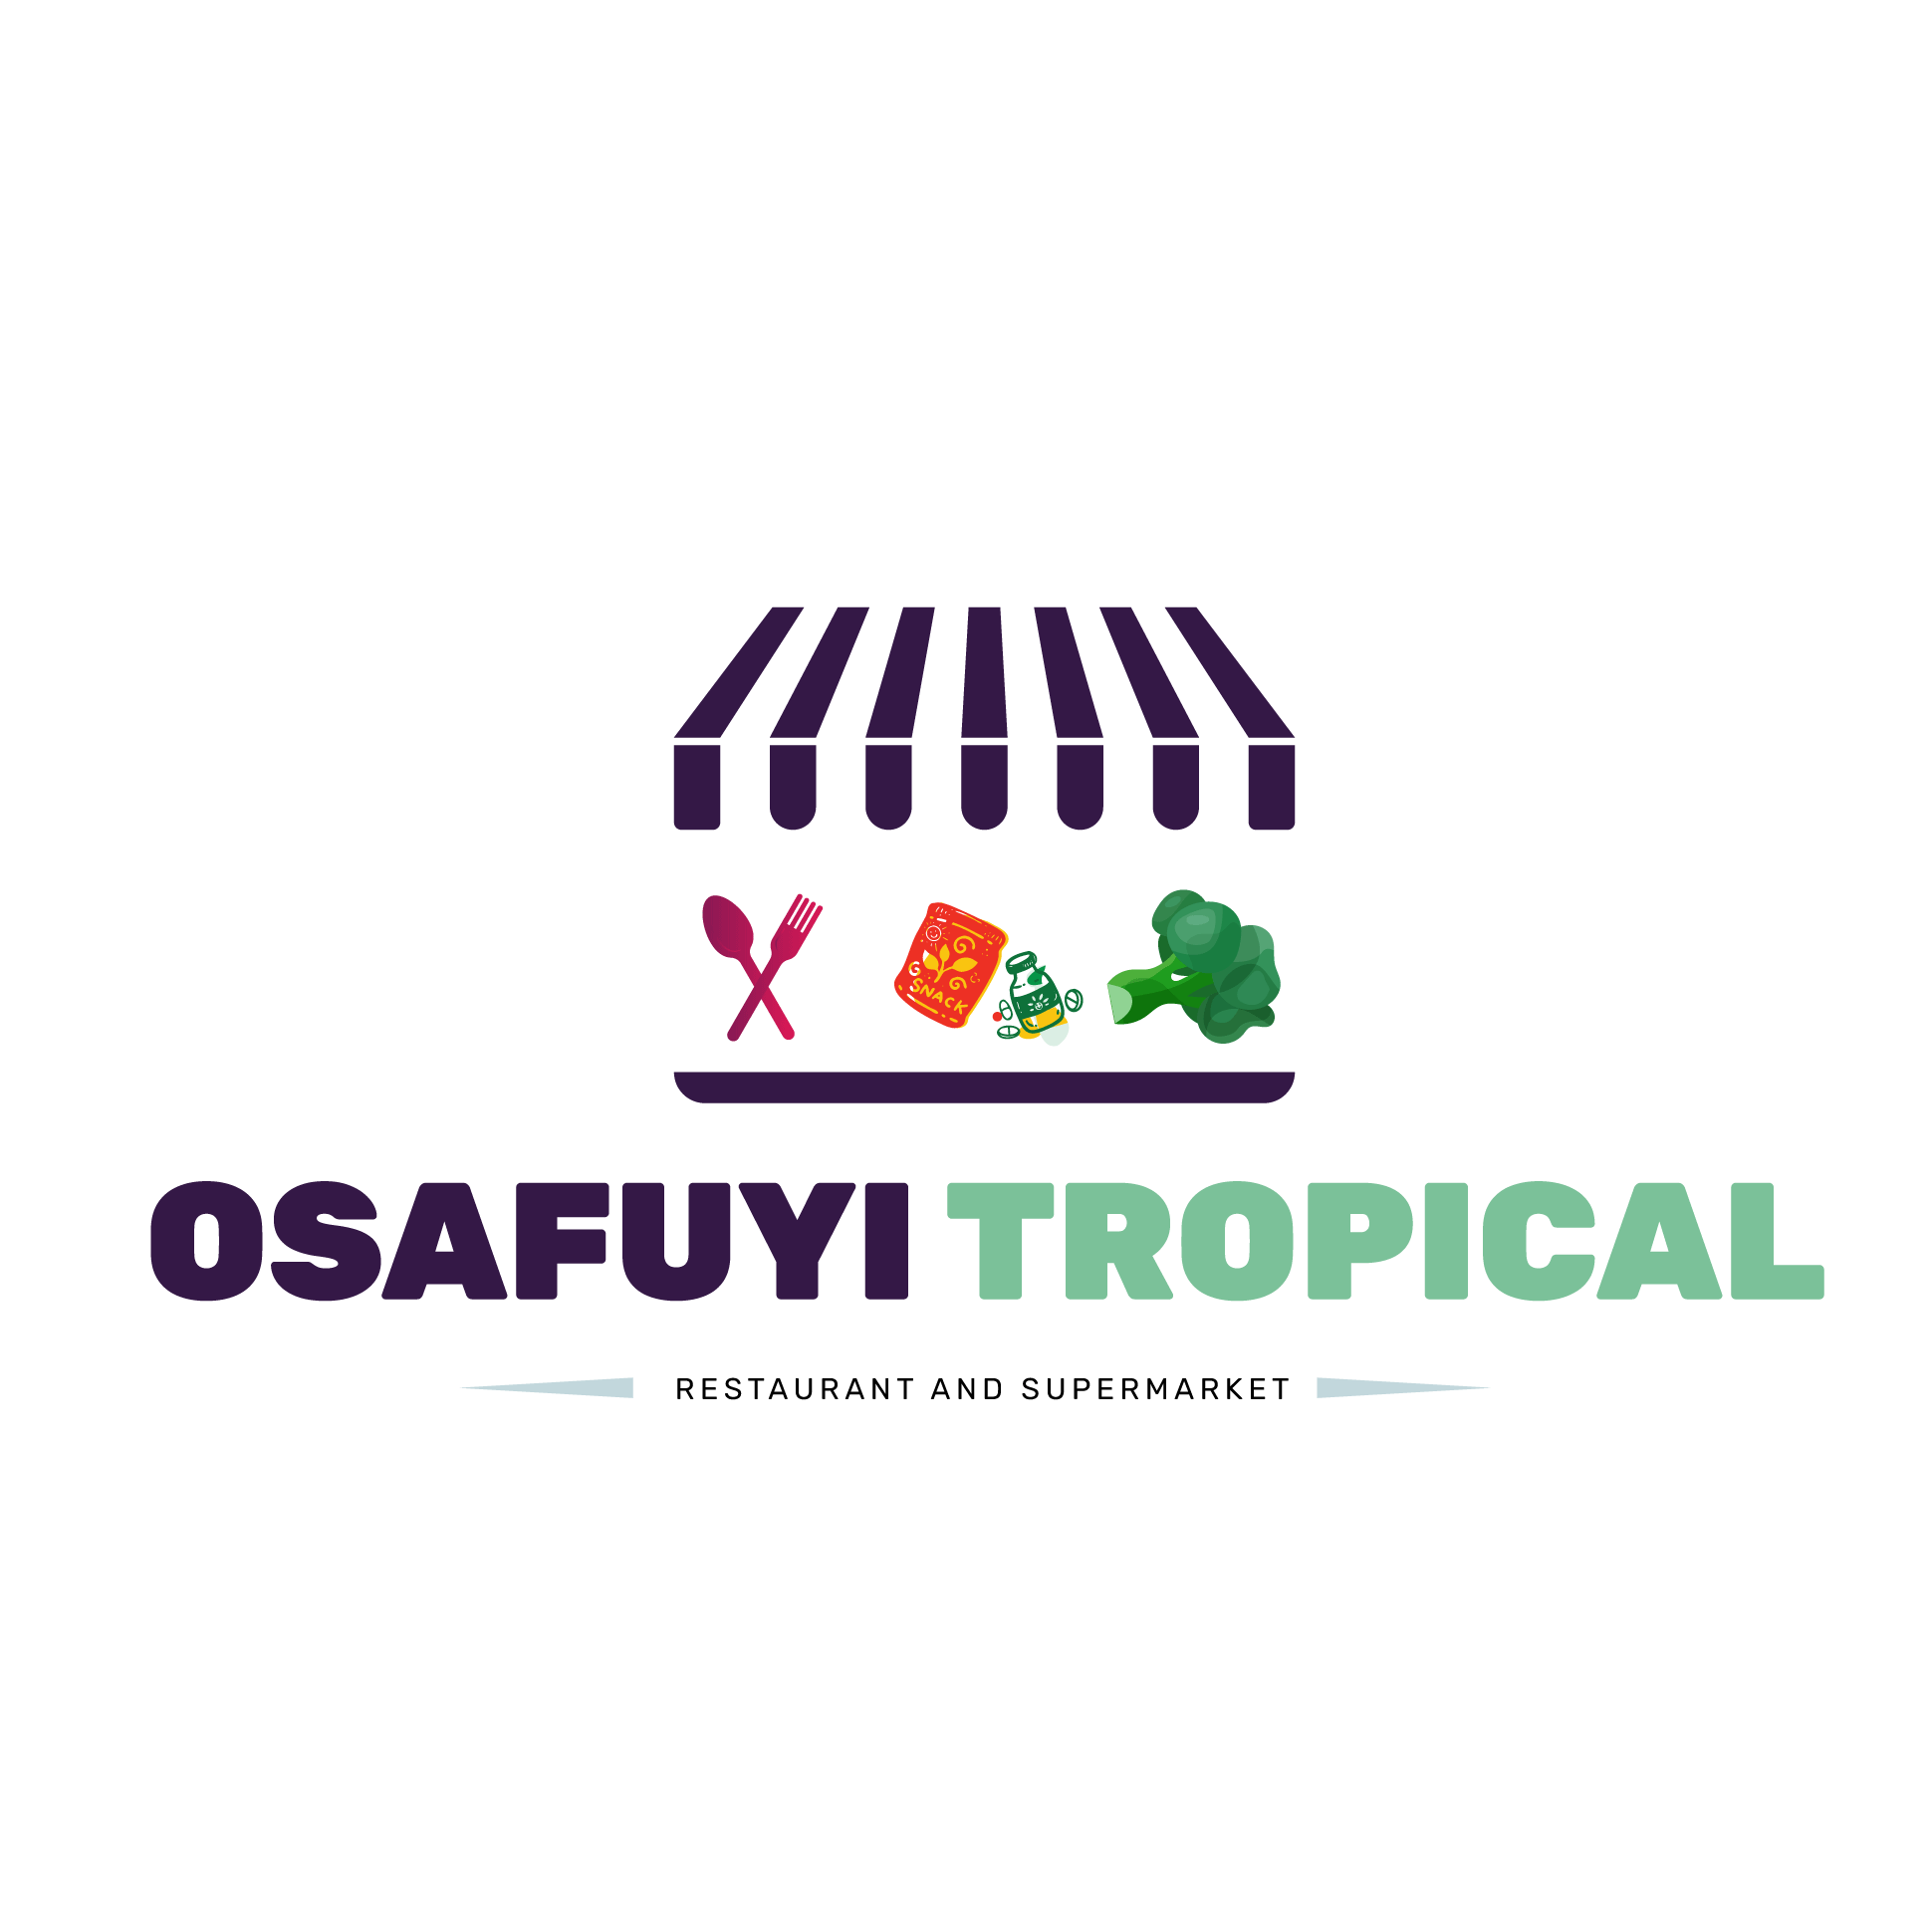 Osafuyi Tropical